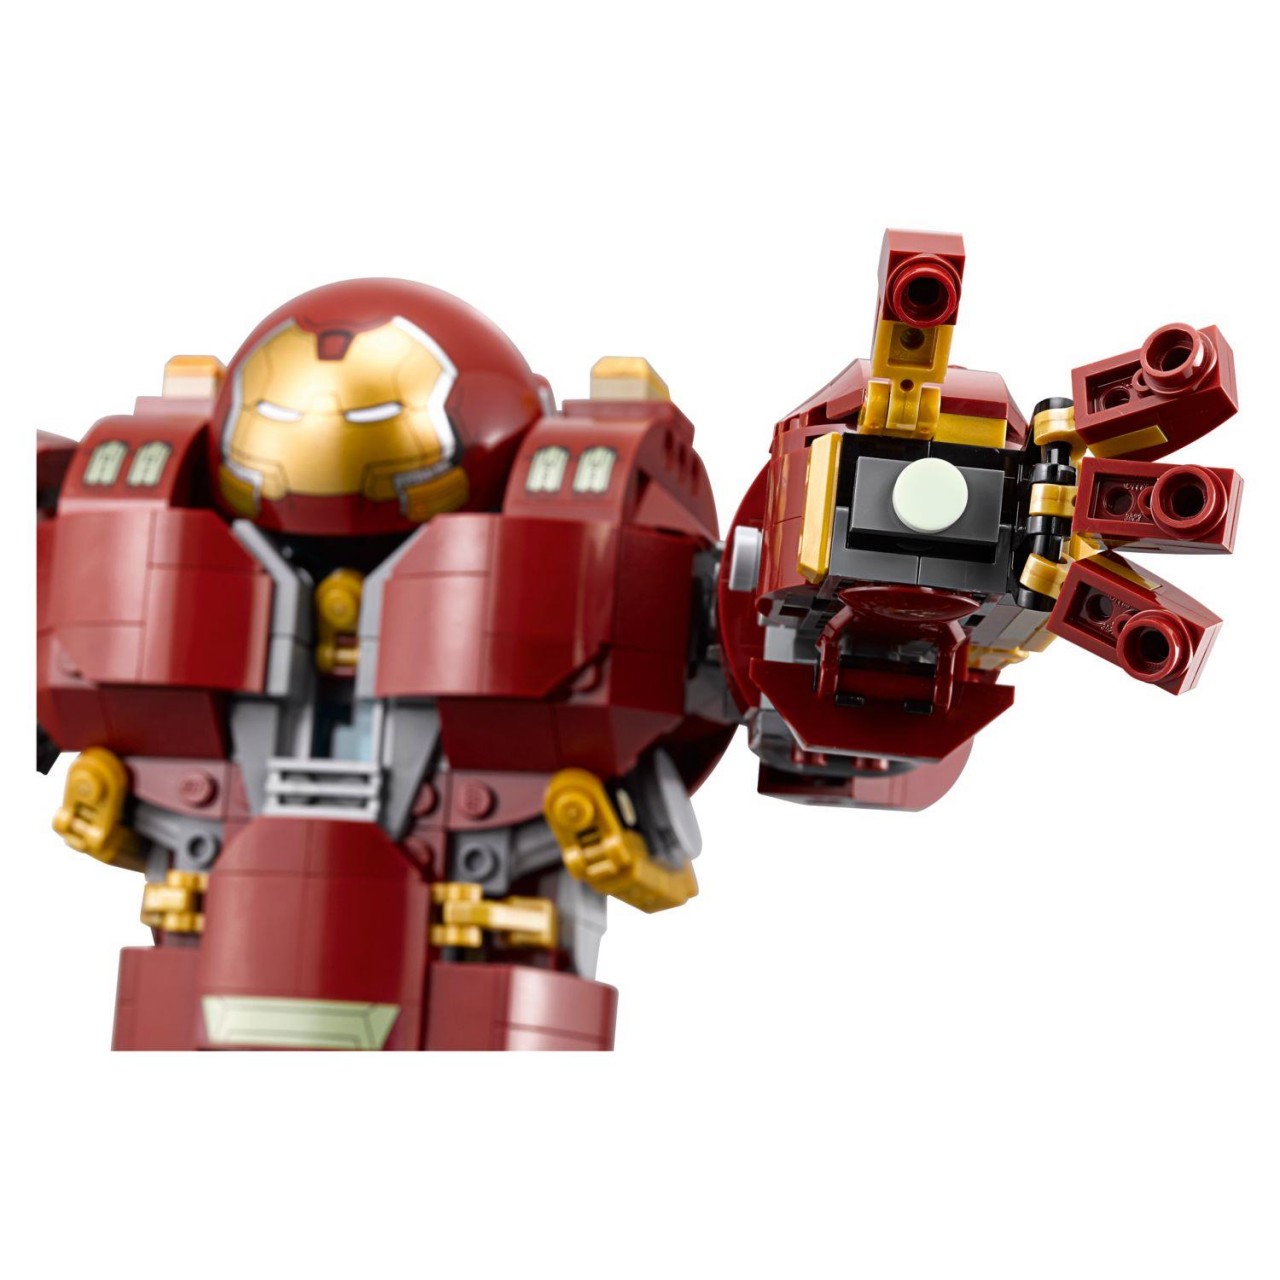 LEGO MARVEL SUPER HEROES 76105 Der Hulkbuster: Ultron Edition